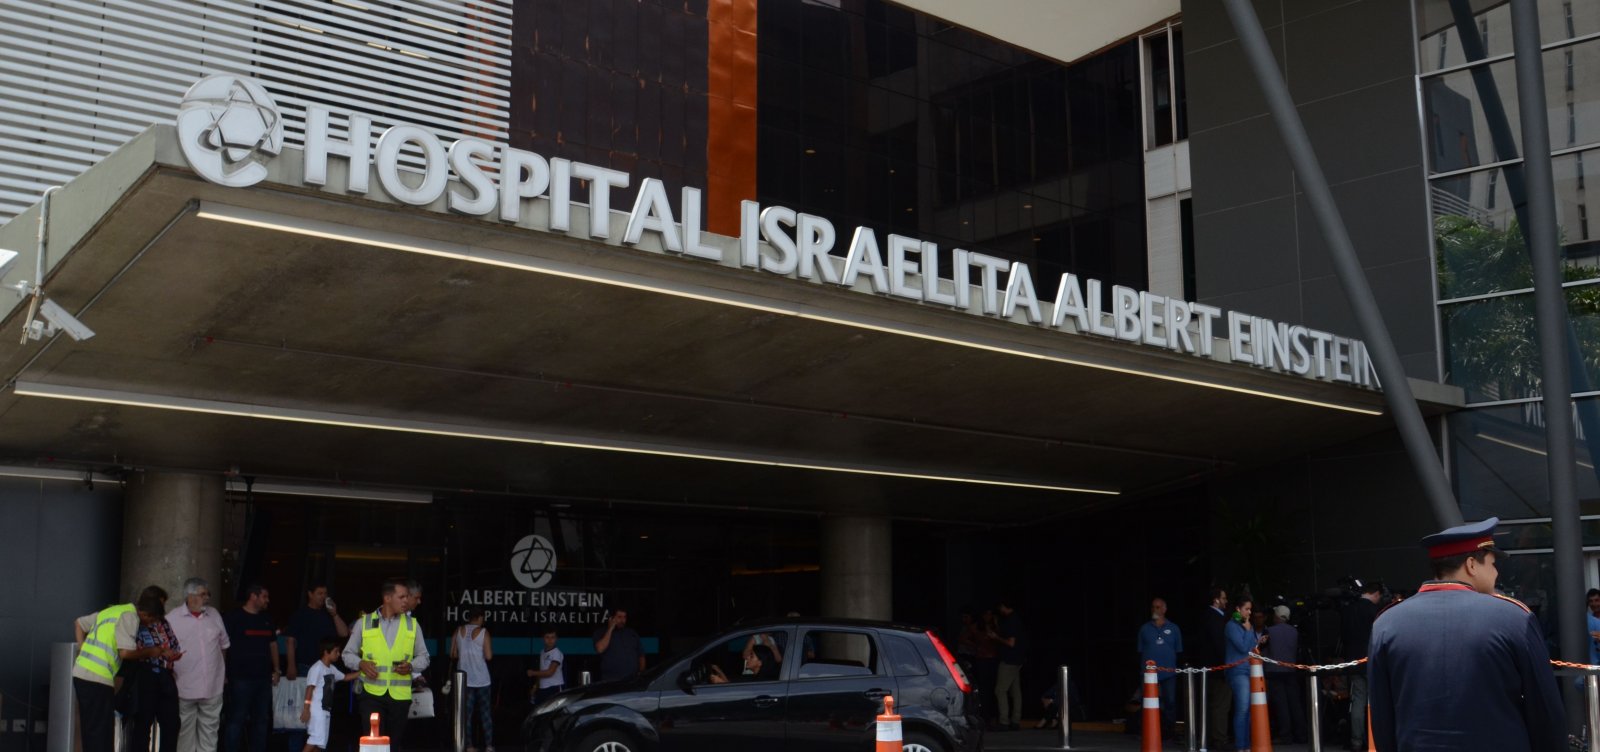 Coronavírus | Brasil confirma primeiro caso em São Paulo. Confira dicas de prevenção!